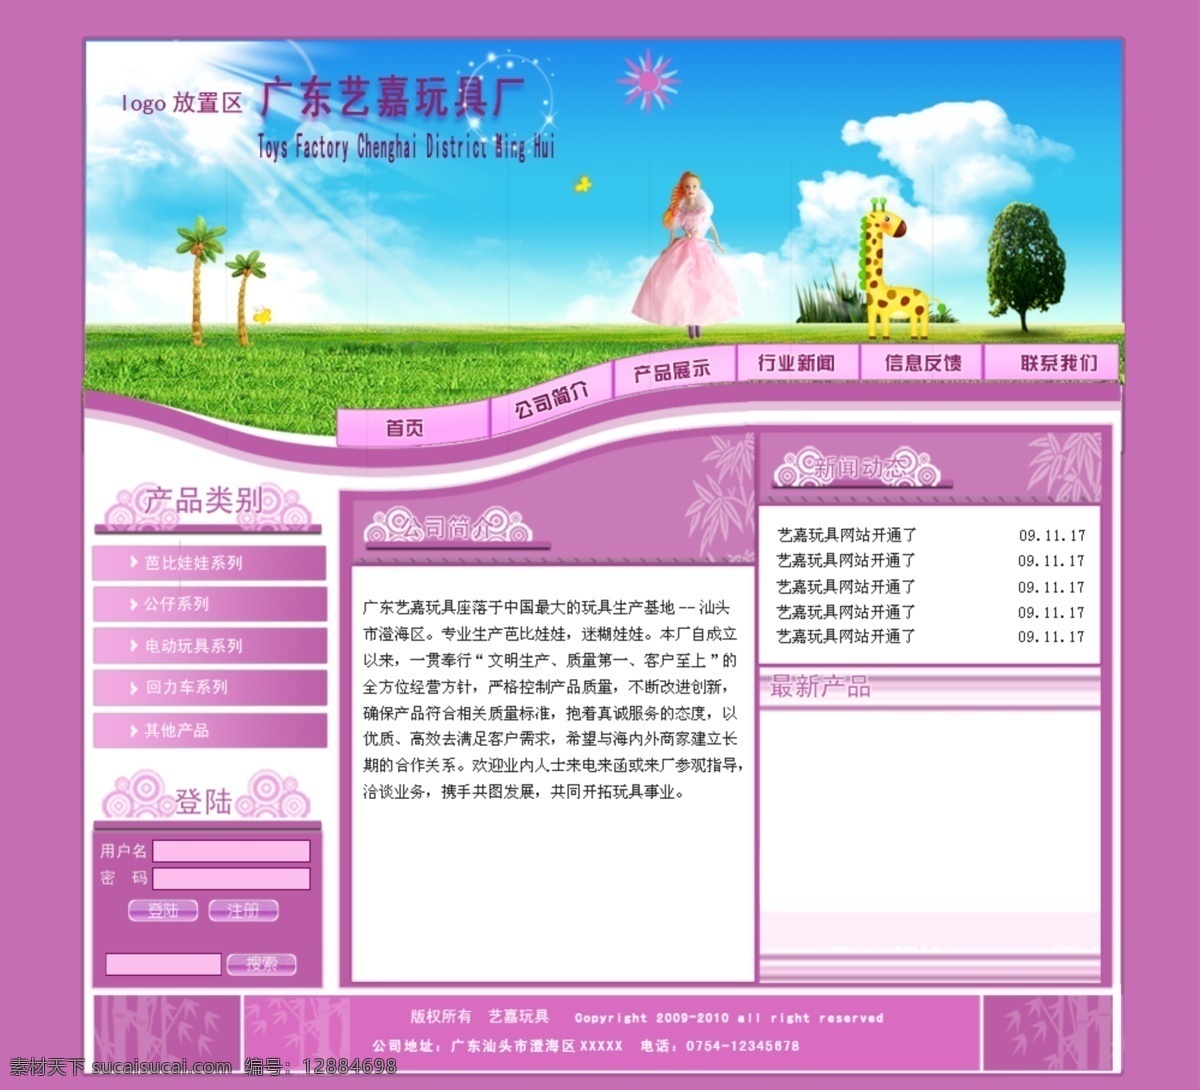 芭比 企业 玩具 网页模板 源文件 中文模版 紫色 企业网 适合 做 模板下载 psd源文件